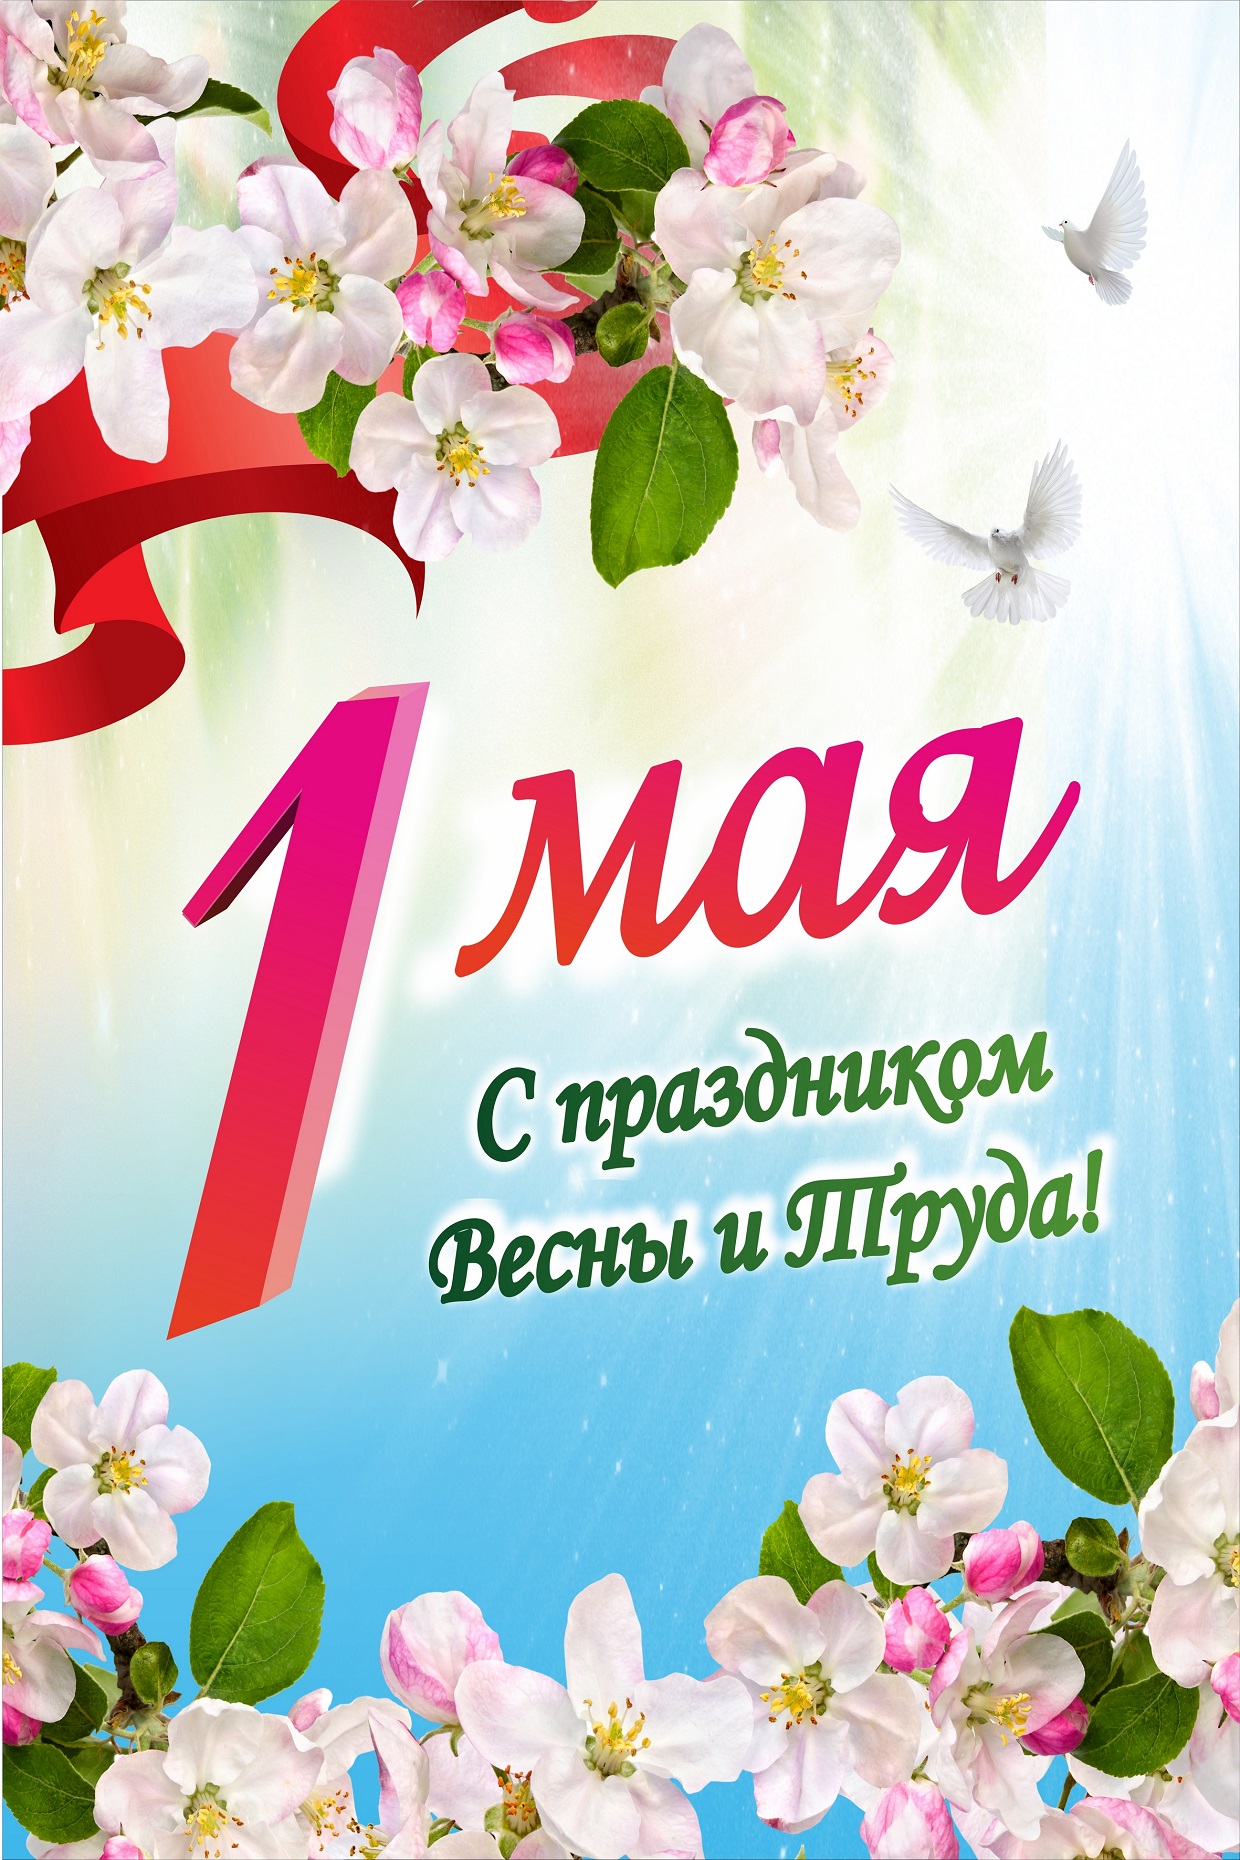 Какой праздник будет 1 мая. 1 Мая праздник. 1 Майя. С 1 маем. С праздником первого мая.